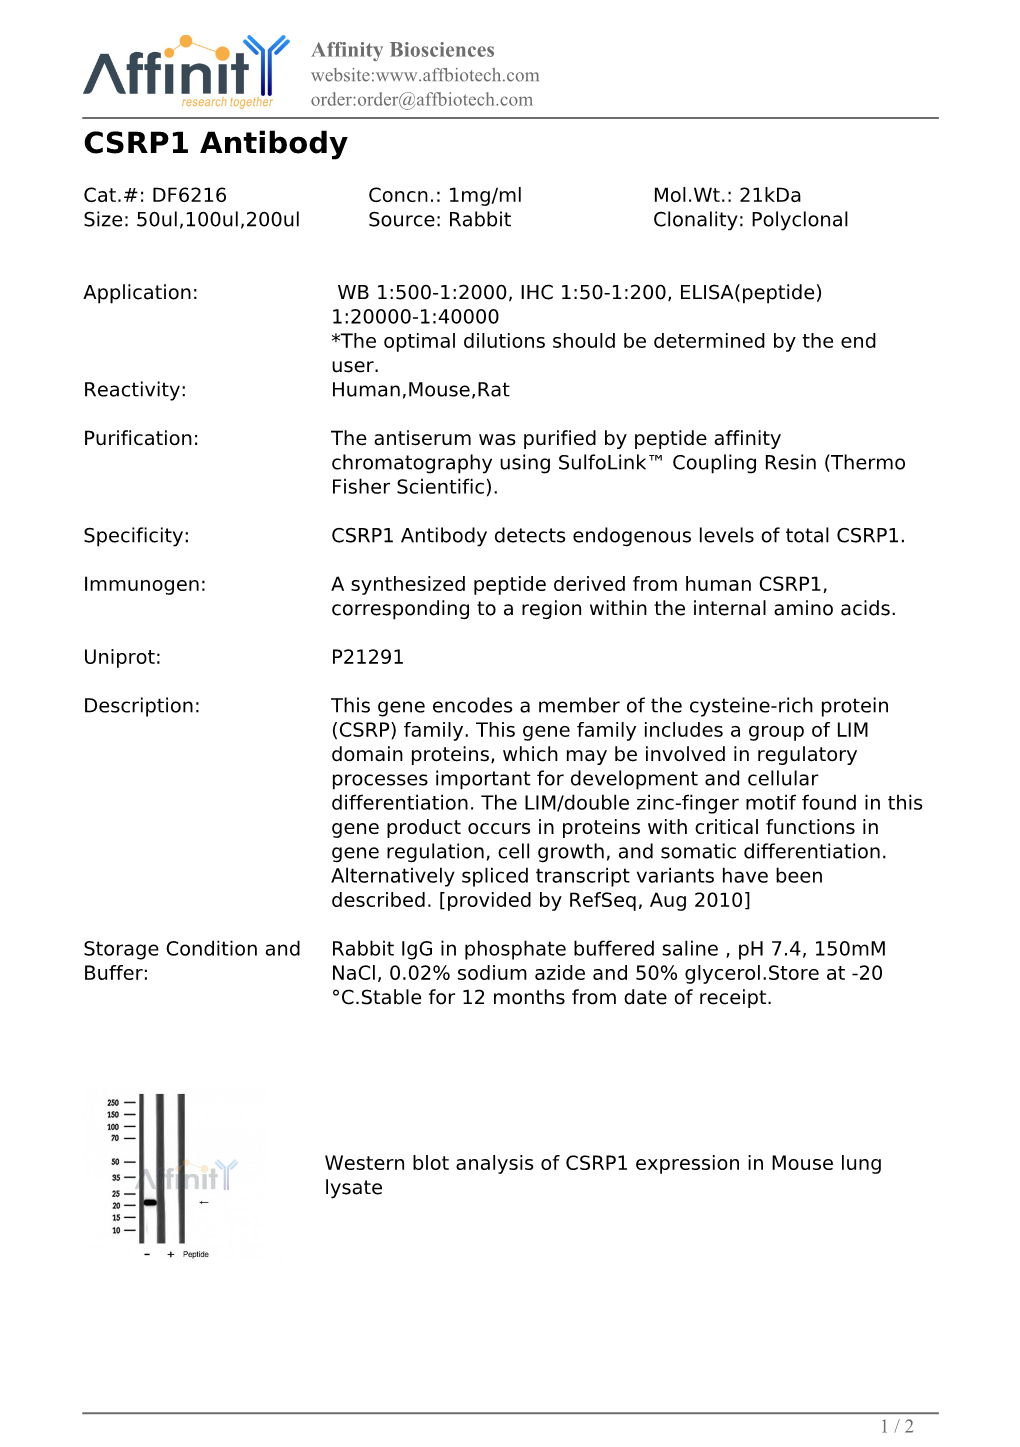 DF6216-CSRP1 Antibody